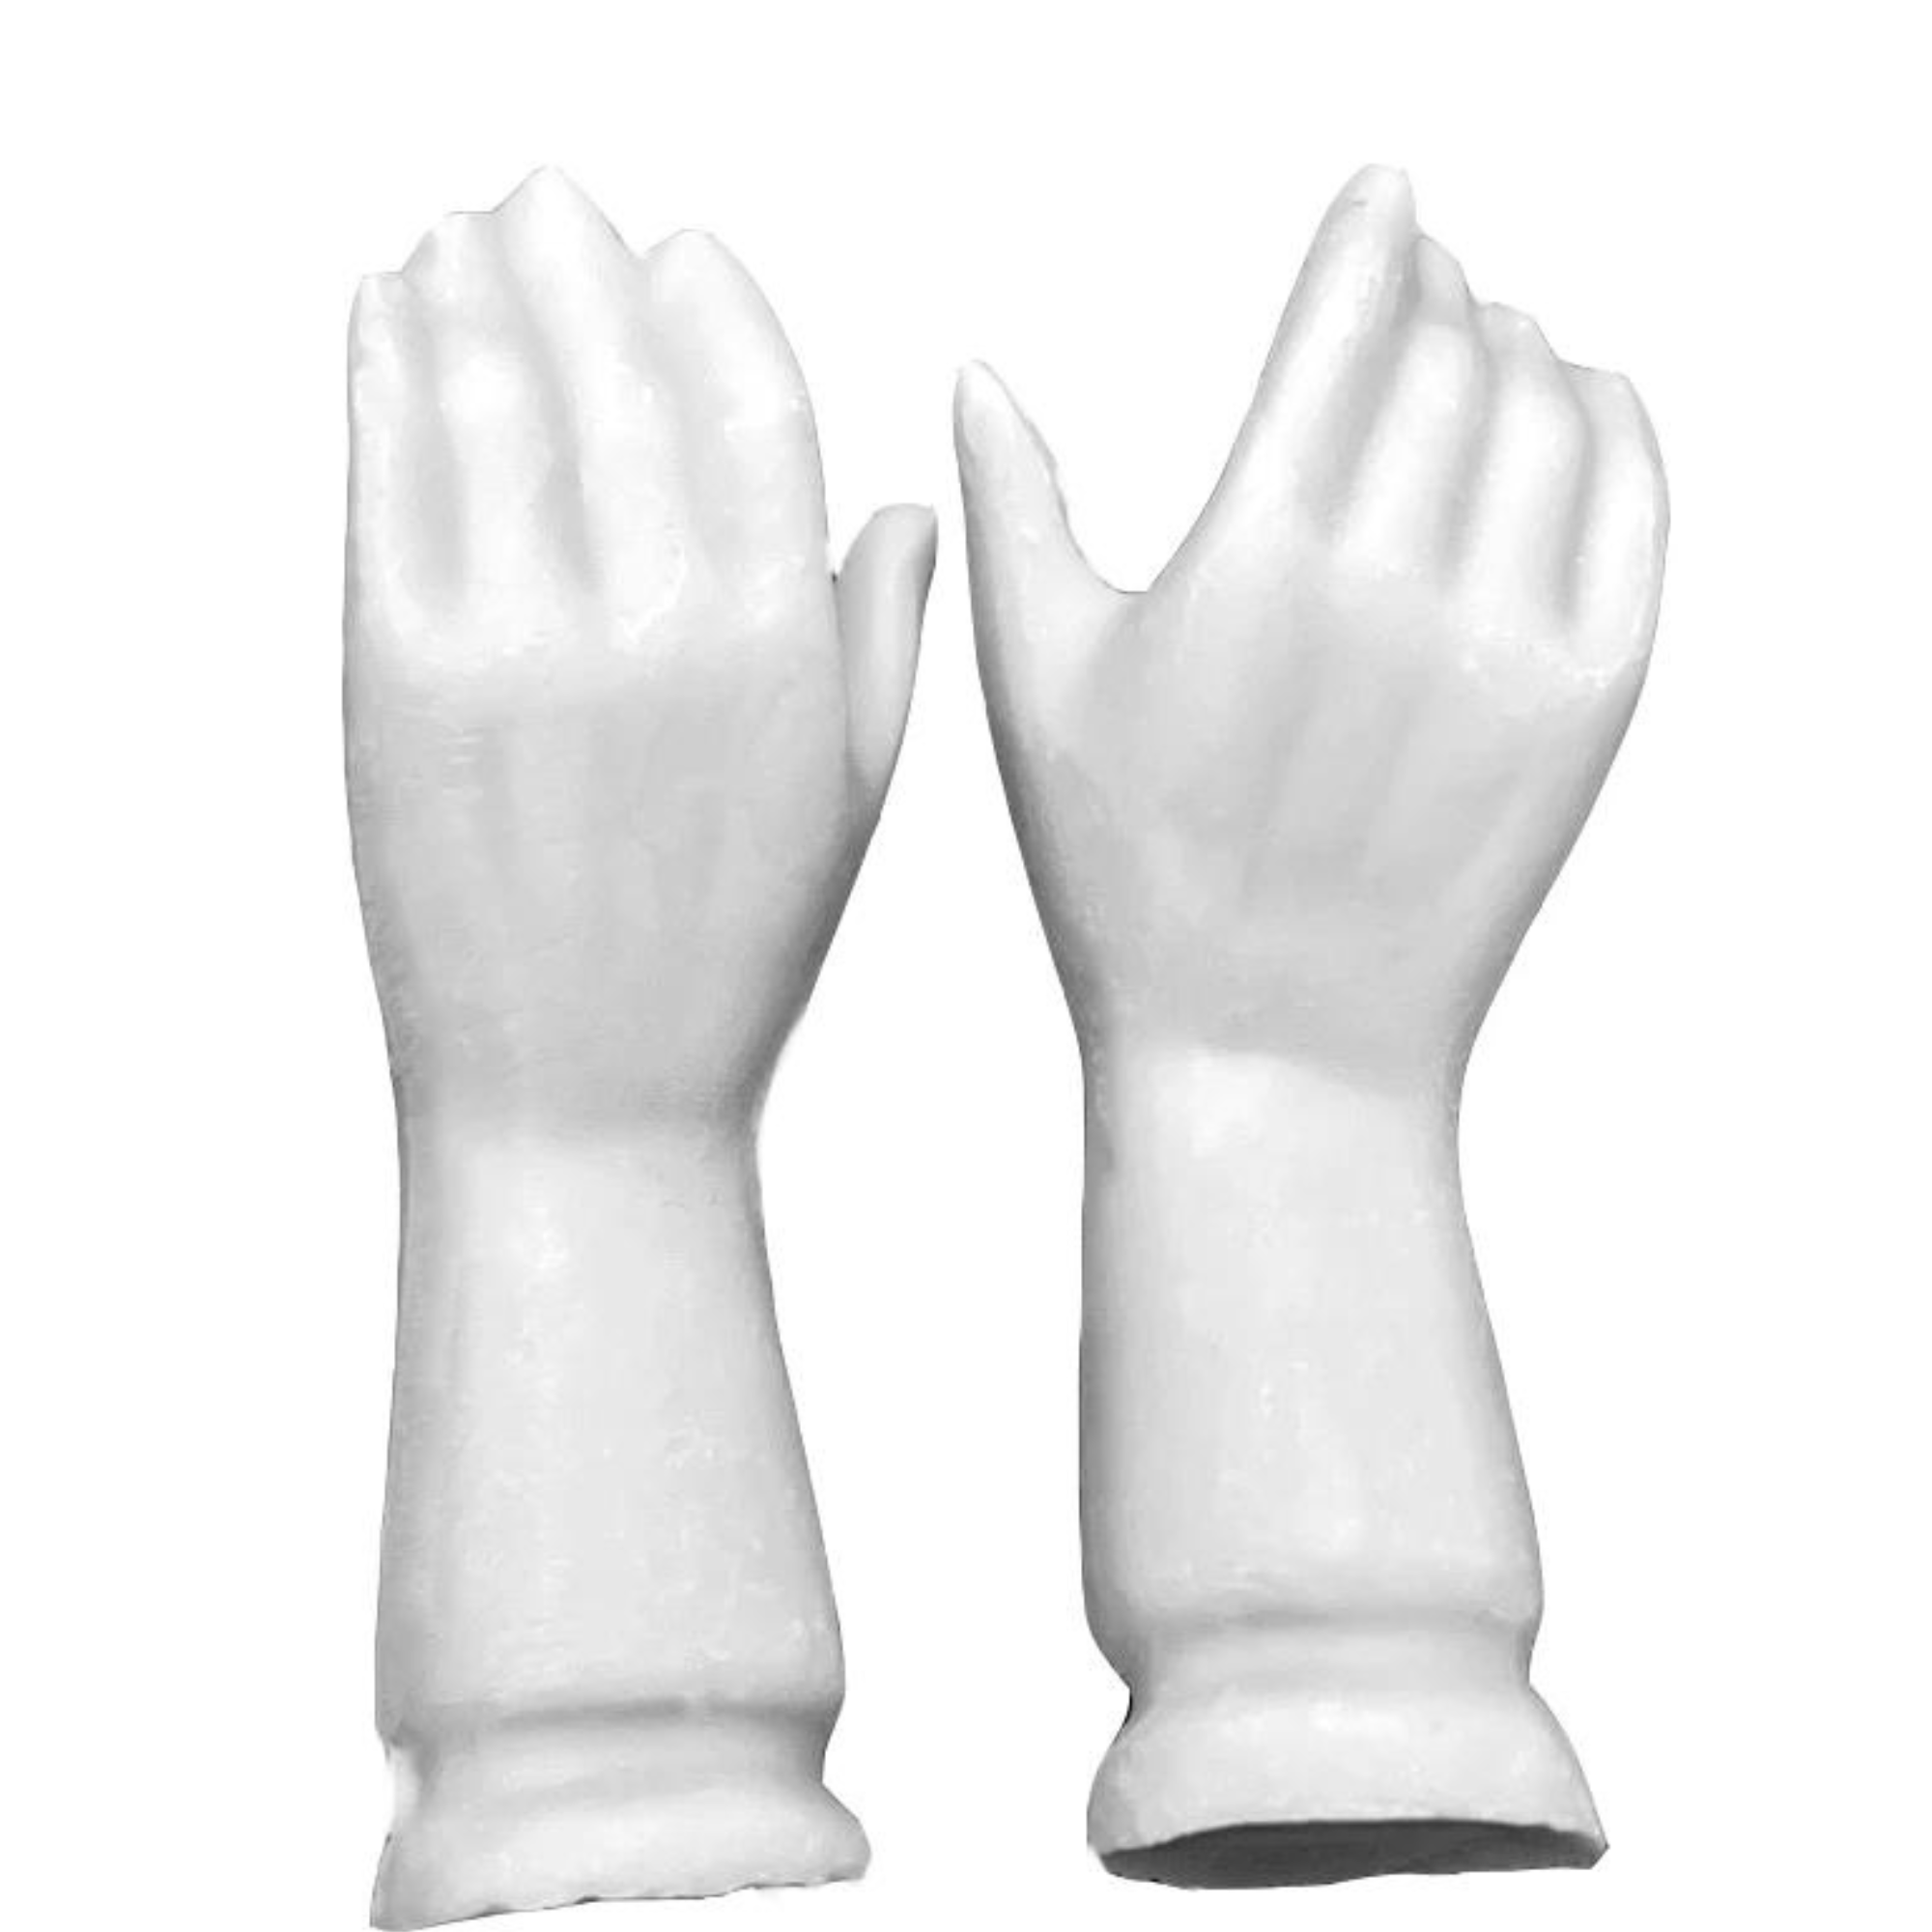 Plaster Hands Female